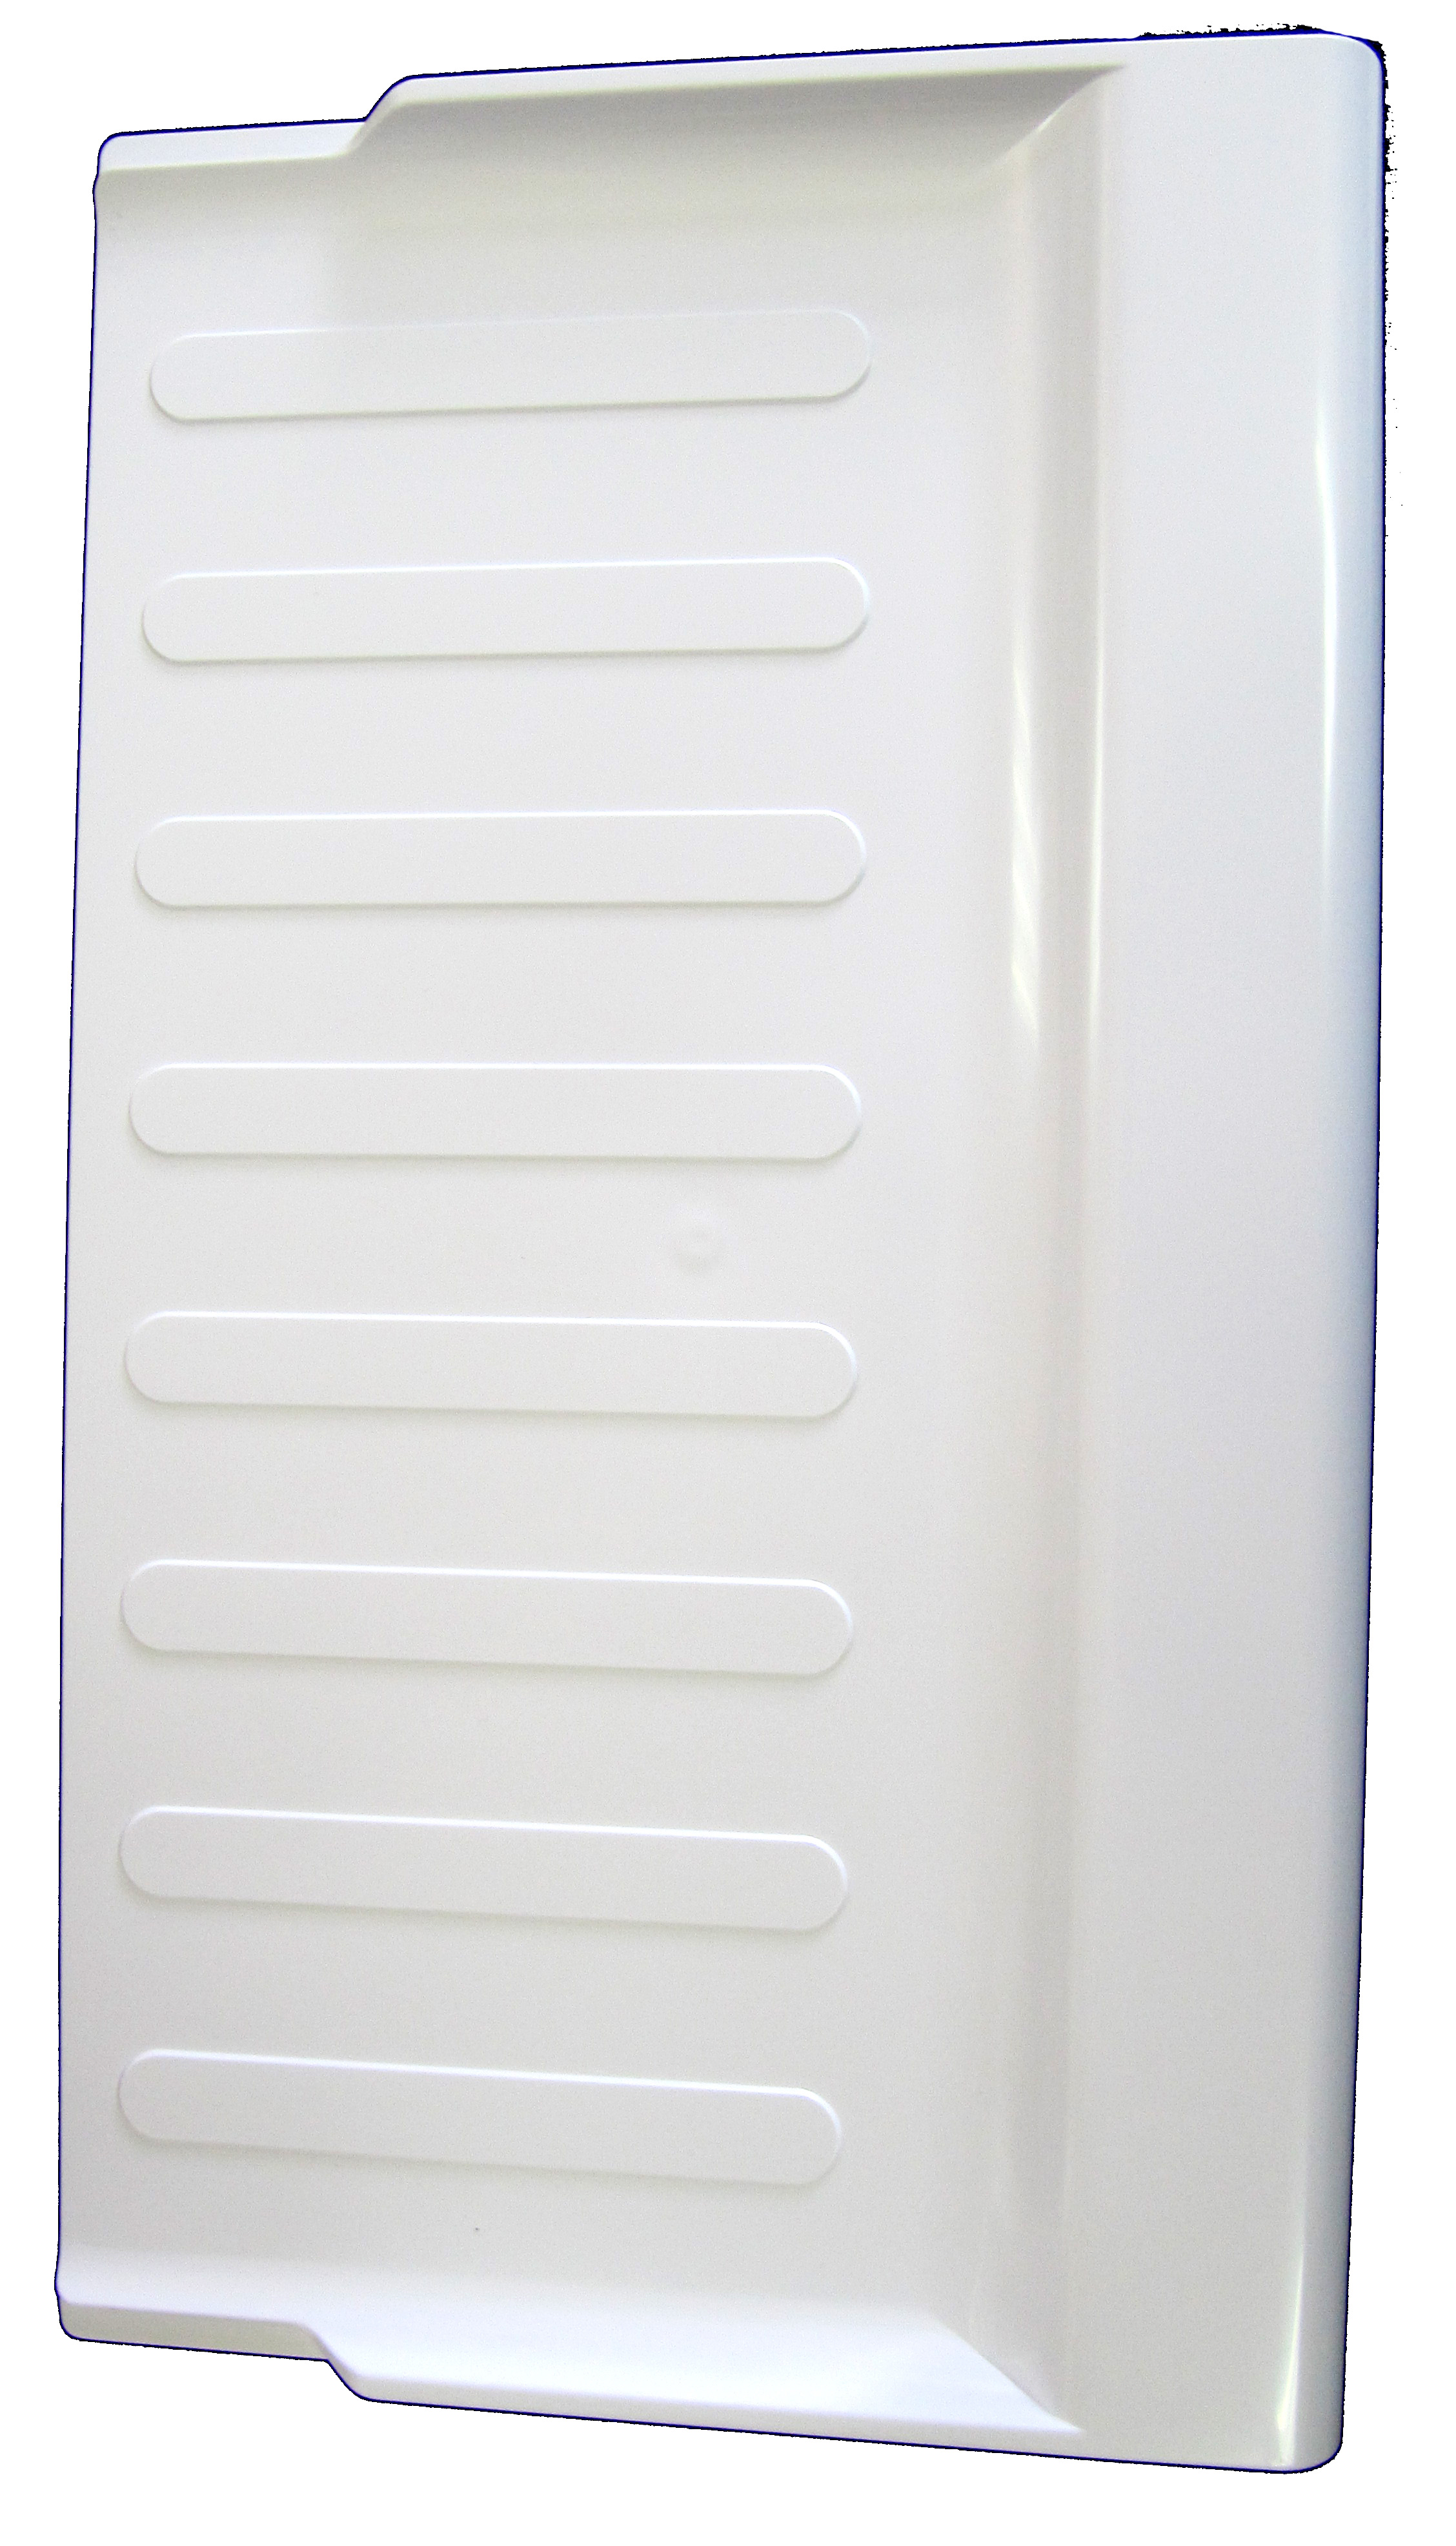 Bandeja plastico frigo fagor; - 35FA1373 - *